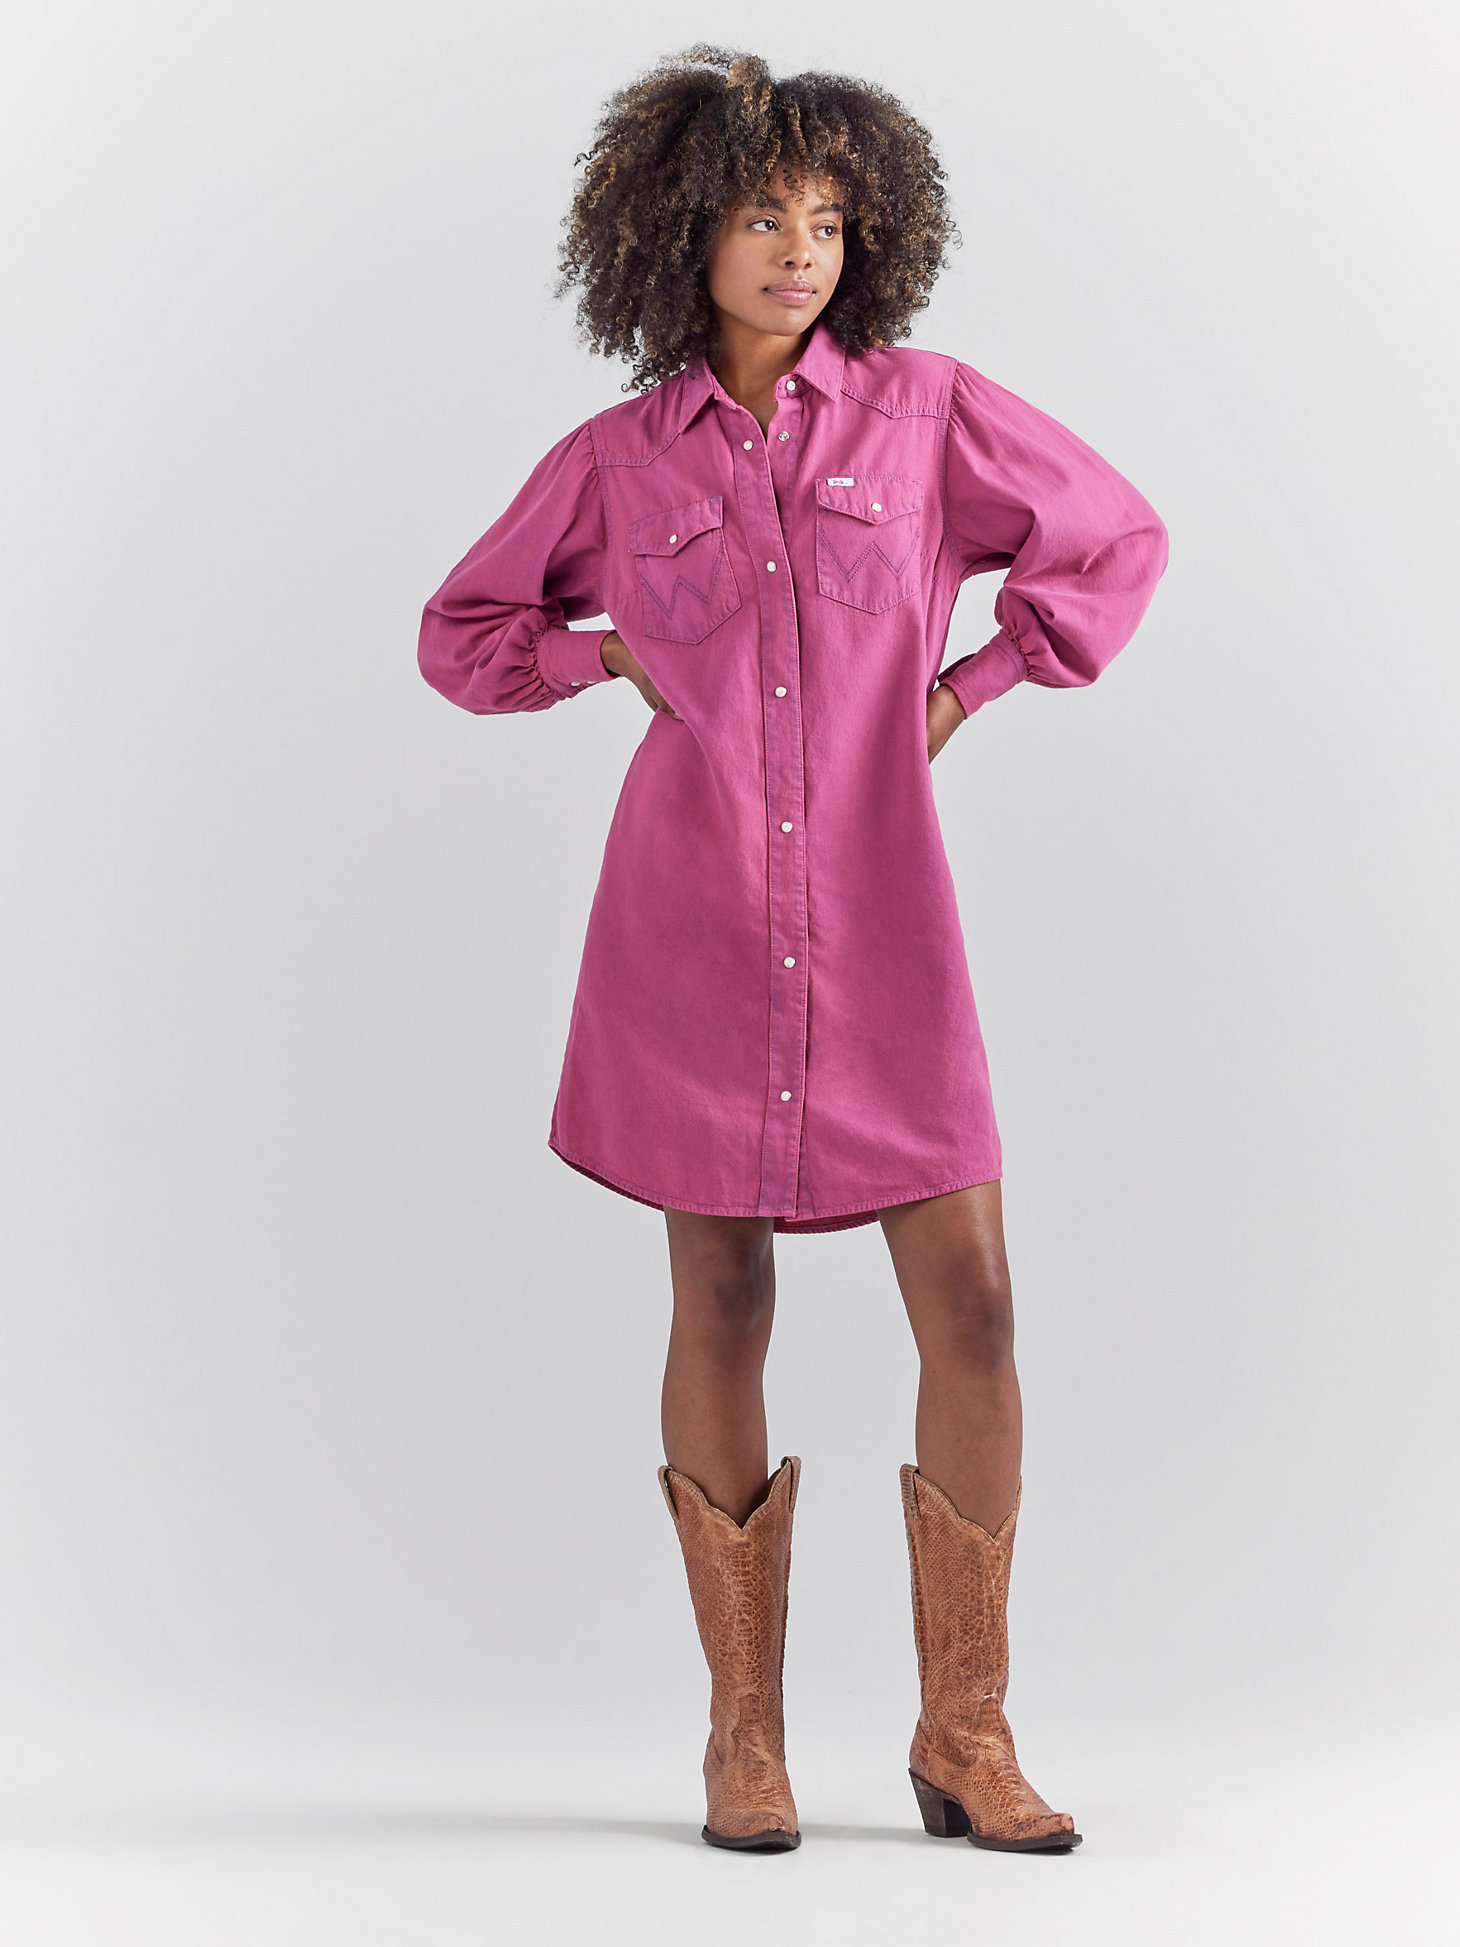 Wrangler x Barbie™ Western Shirt Dress in Dreamy Pink alternative view 1